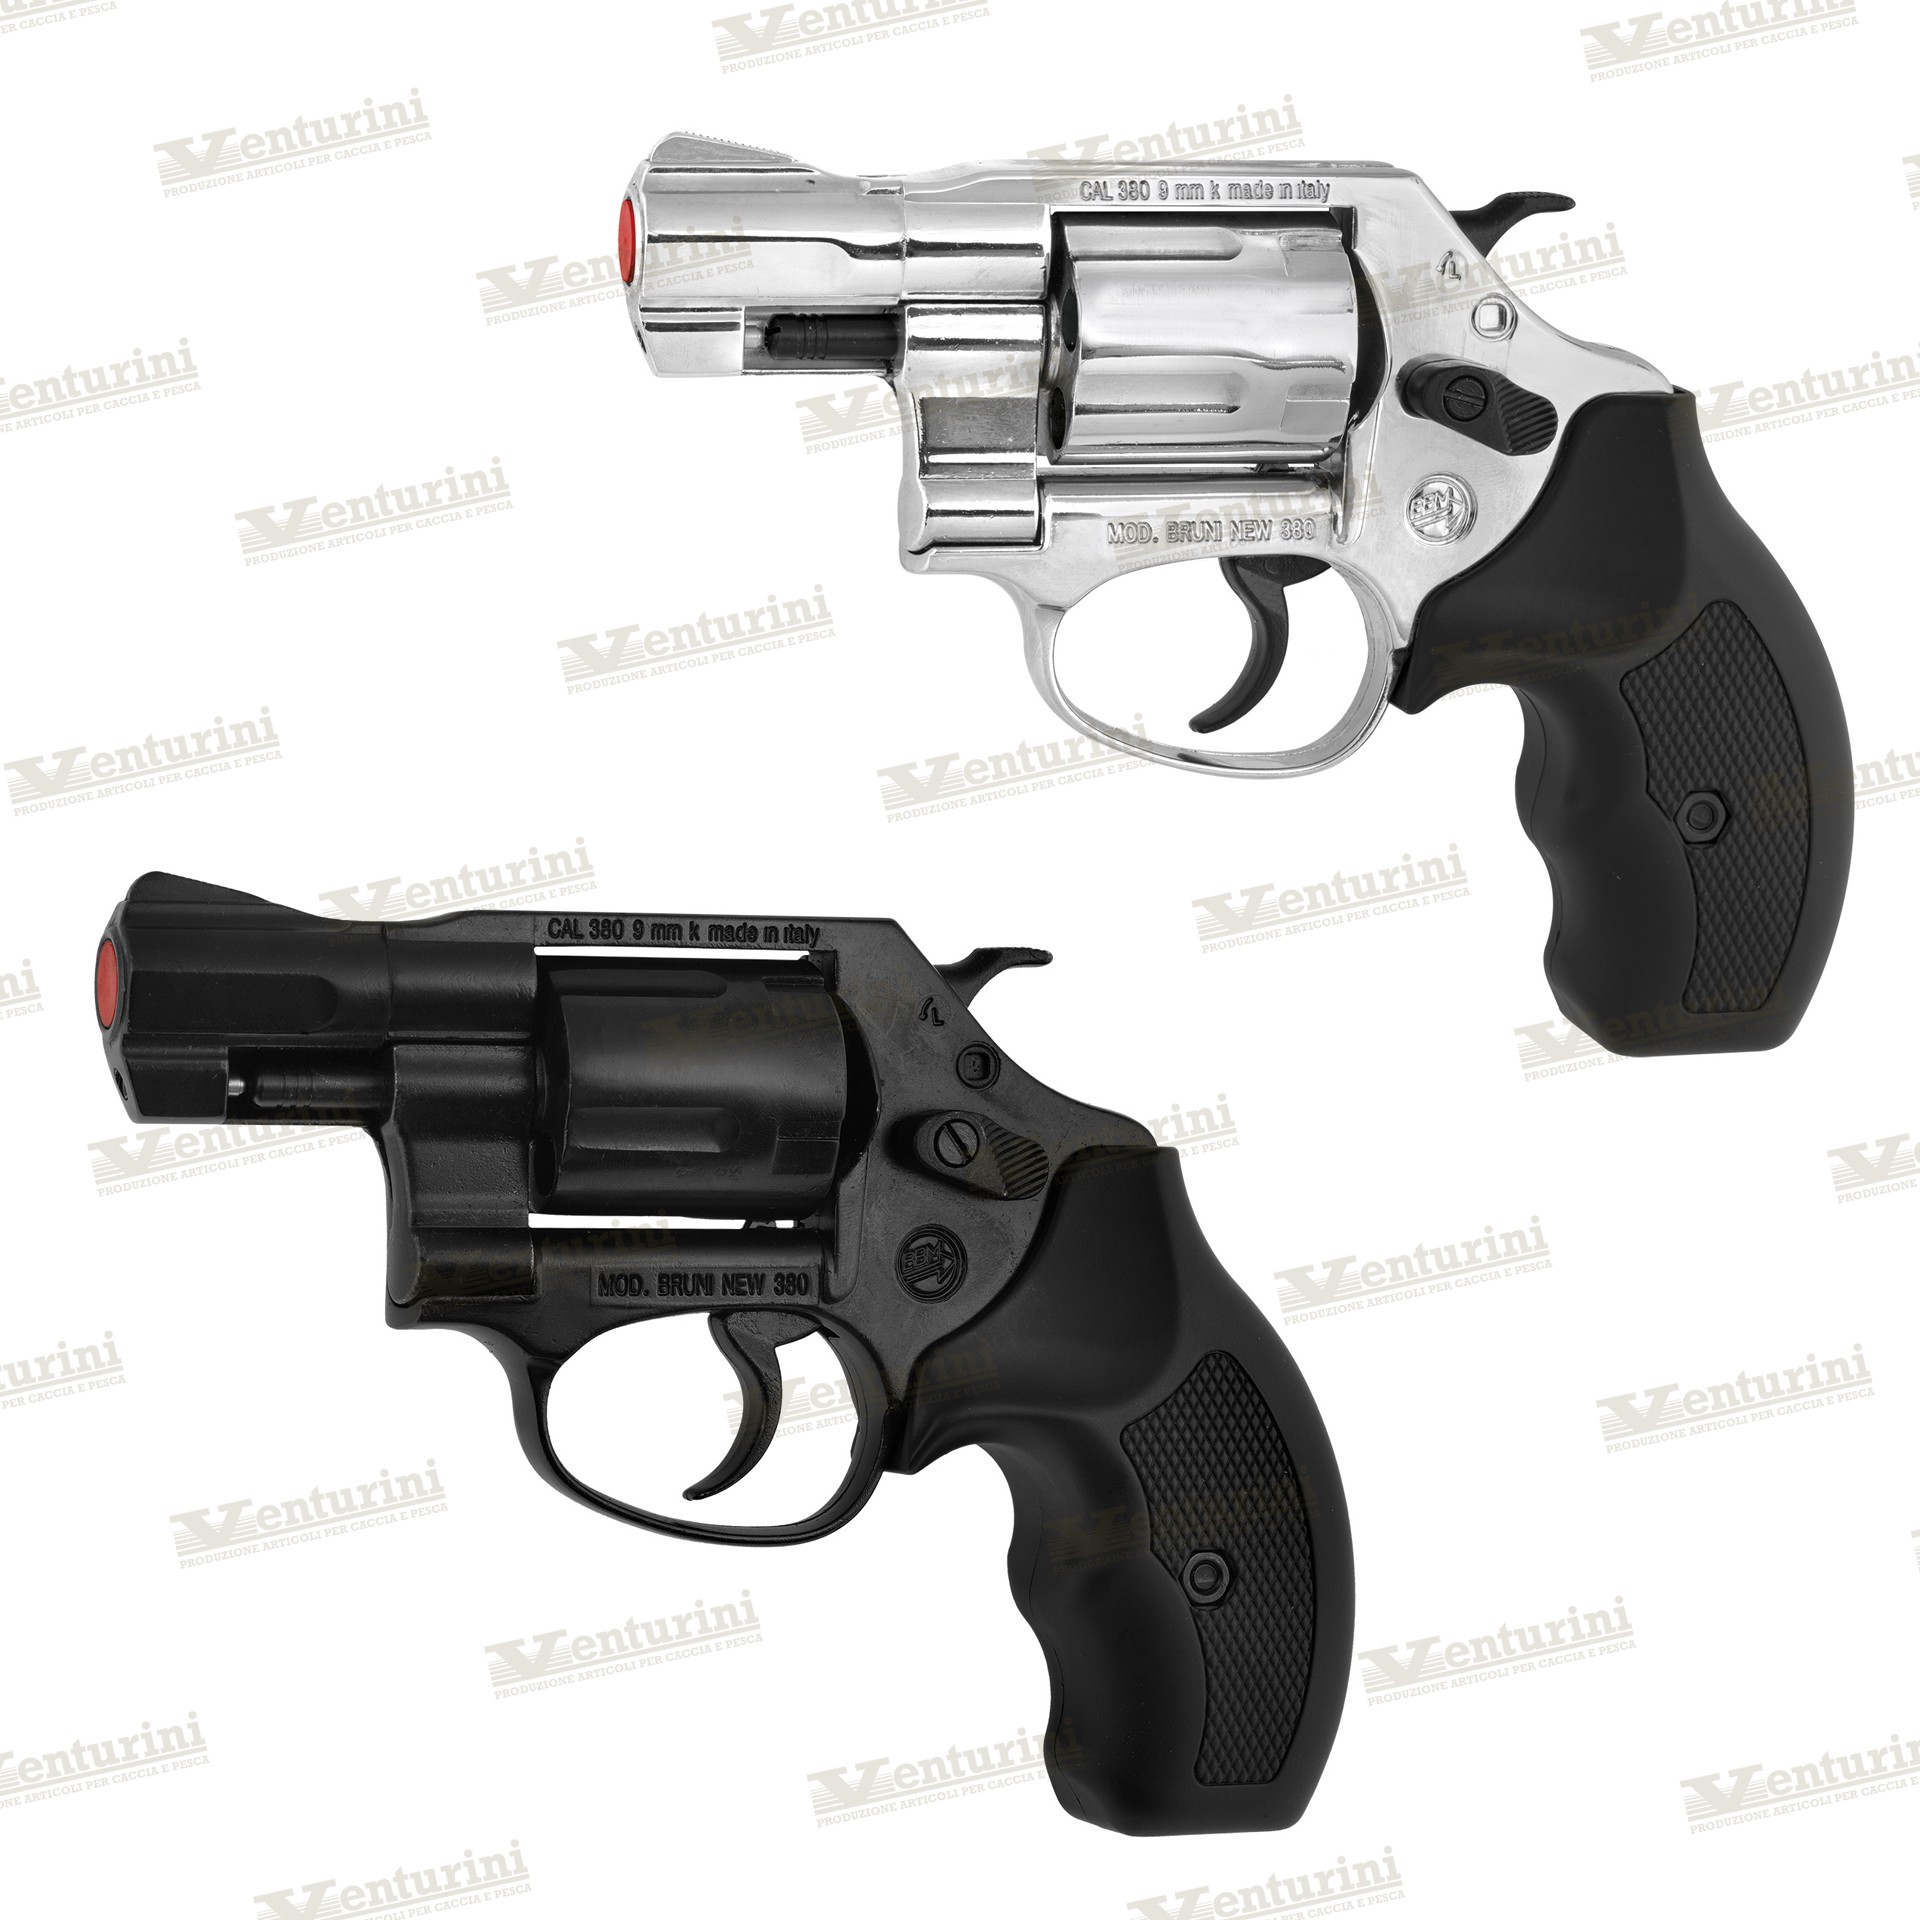 Pistola a salve mod. Revolver New 380 2 pollici cal. 380 Bruni - Venturini  Shop